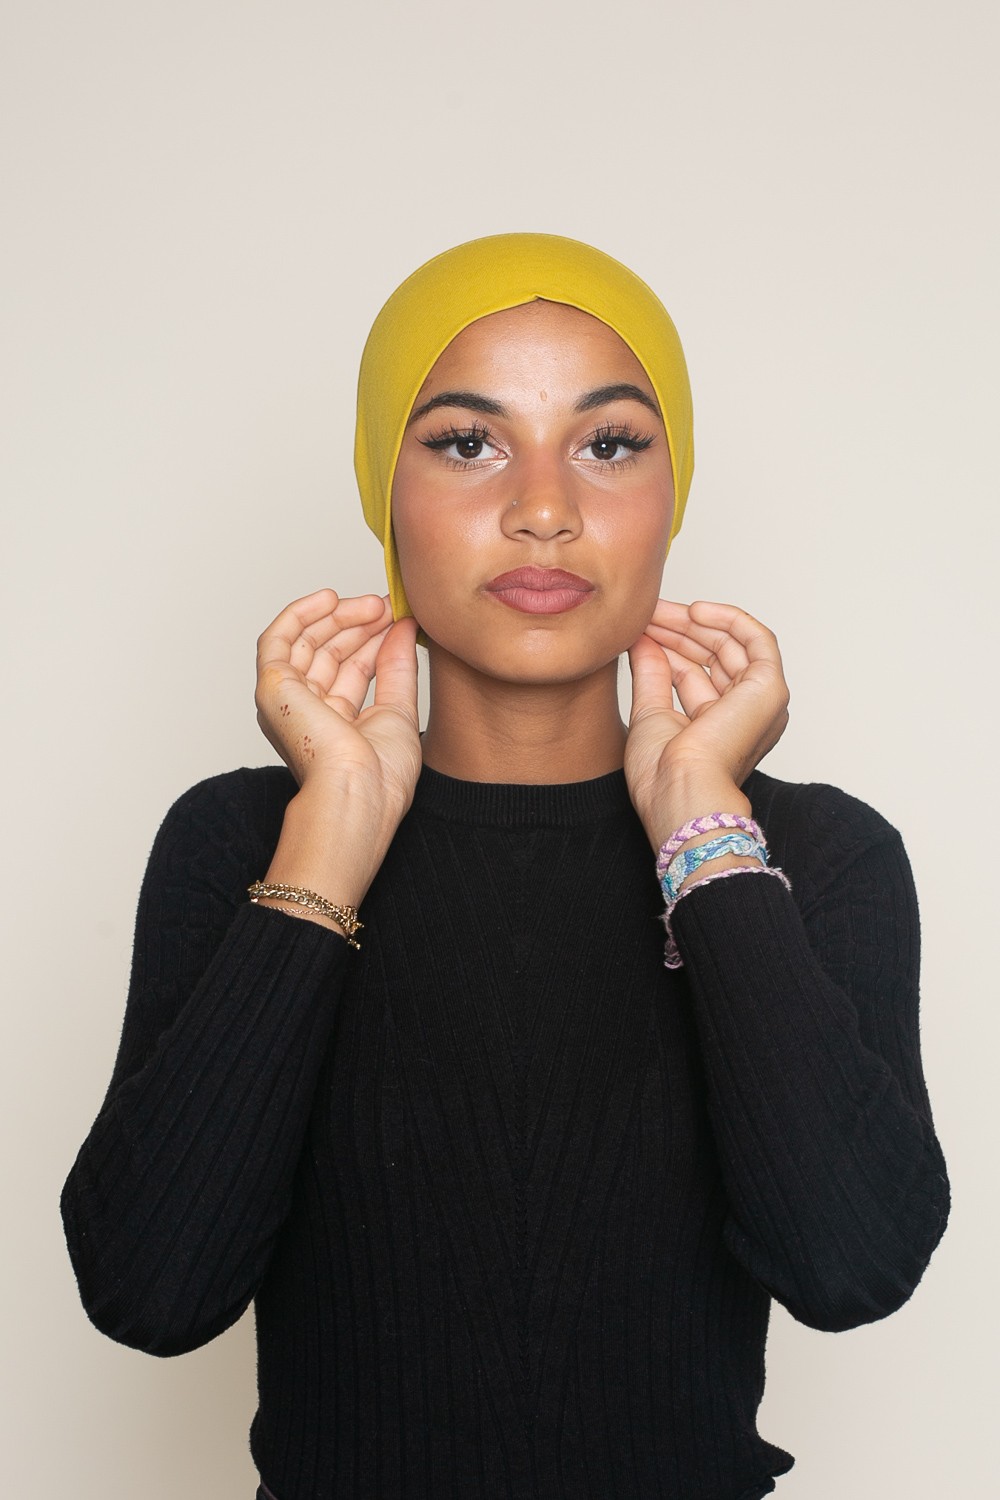 Bonnet tube sous hijab blanc